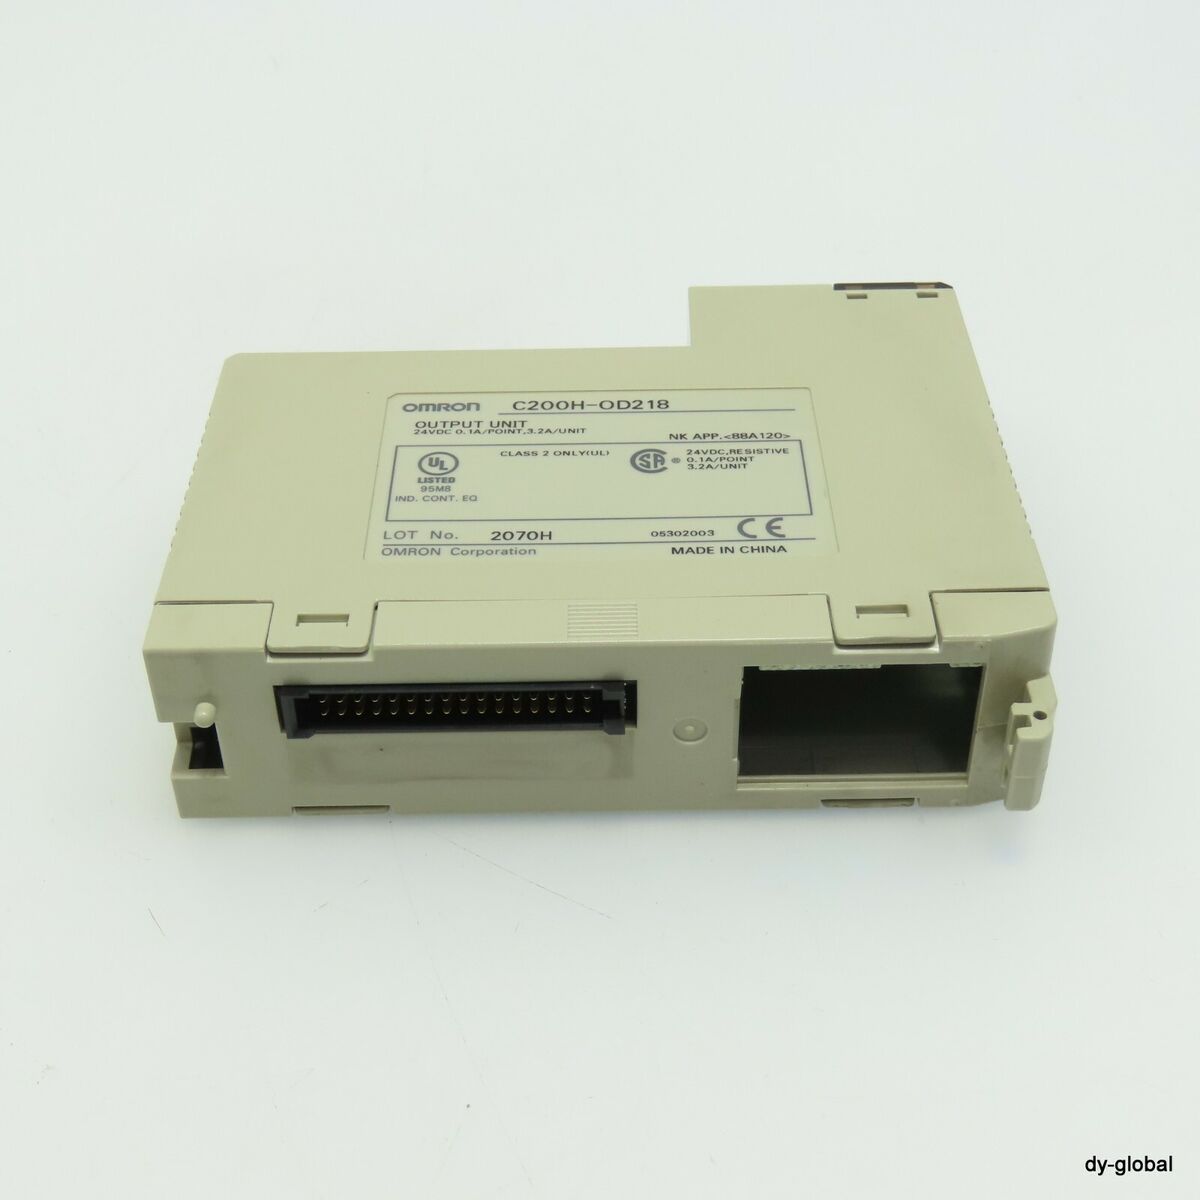 OMRON Used C200H-OD218 Output Unit PLC-I-1492=9L23